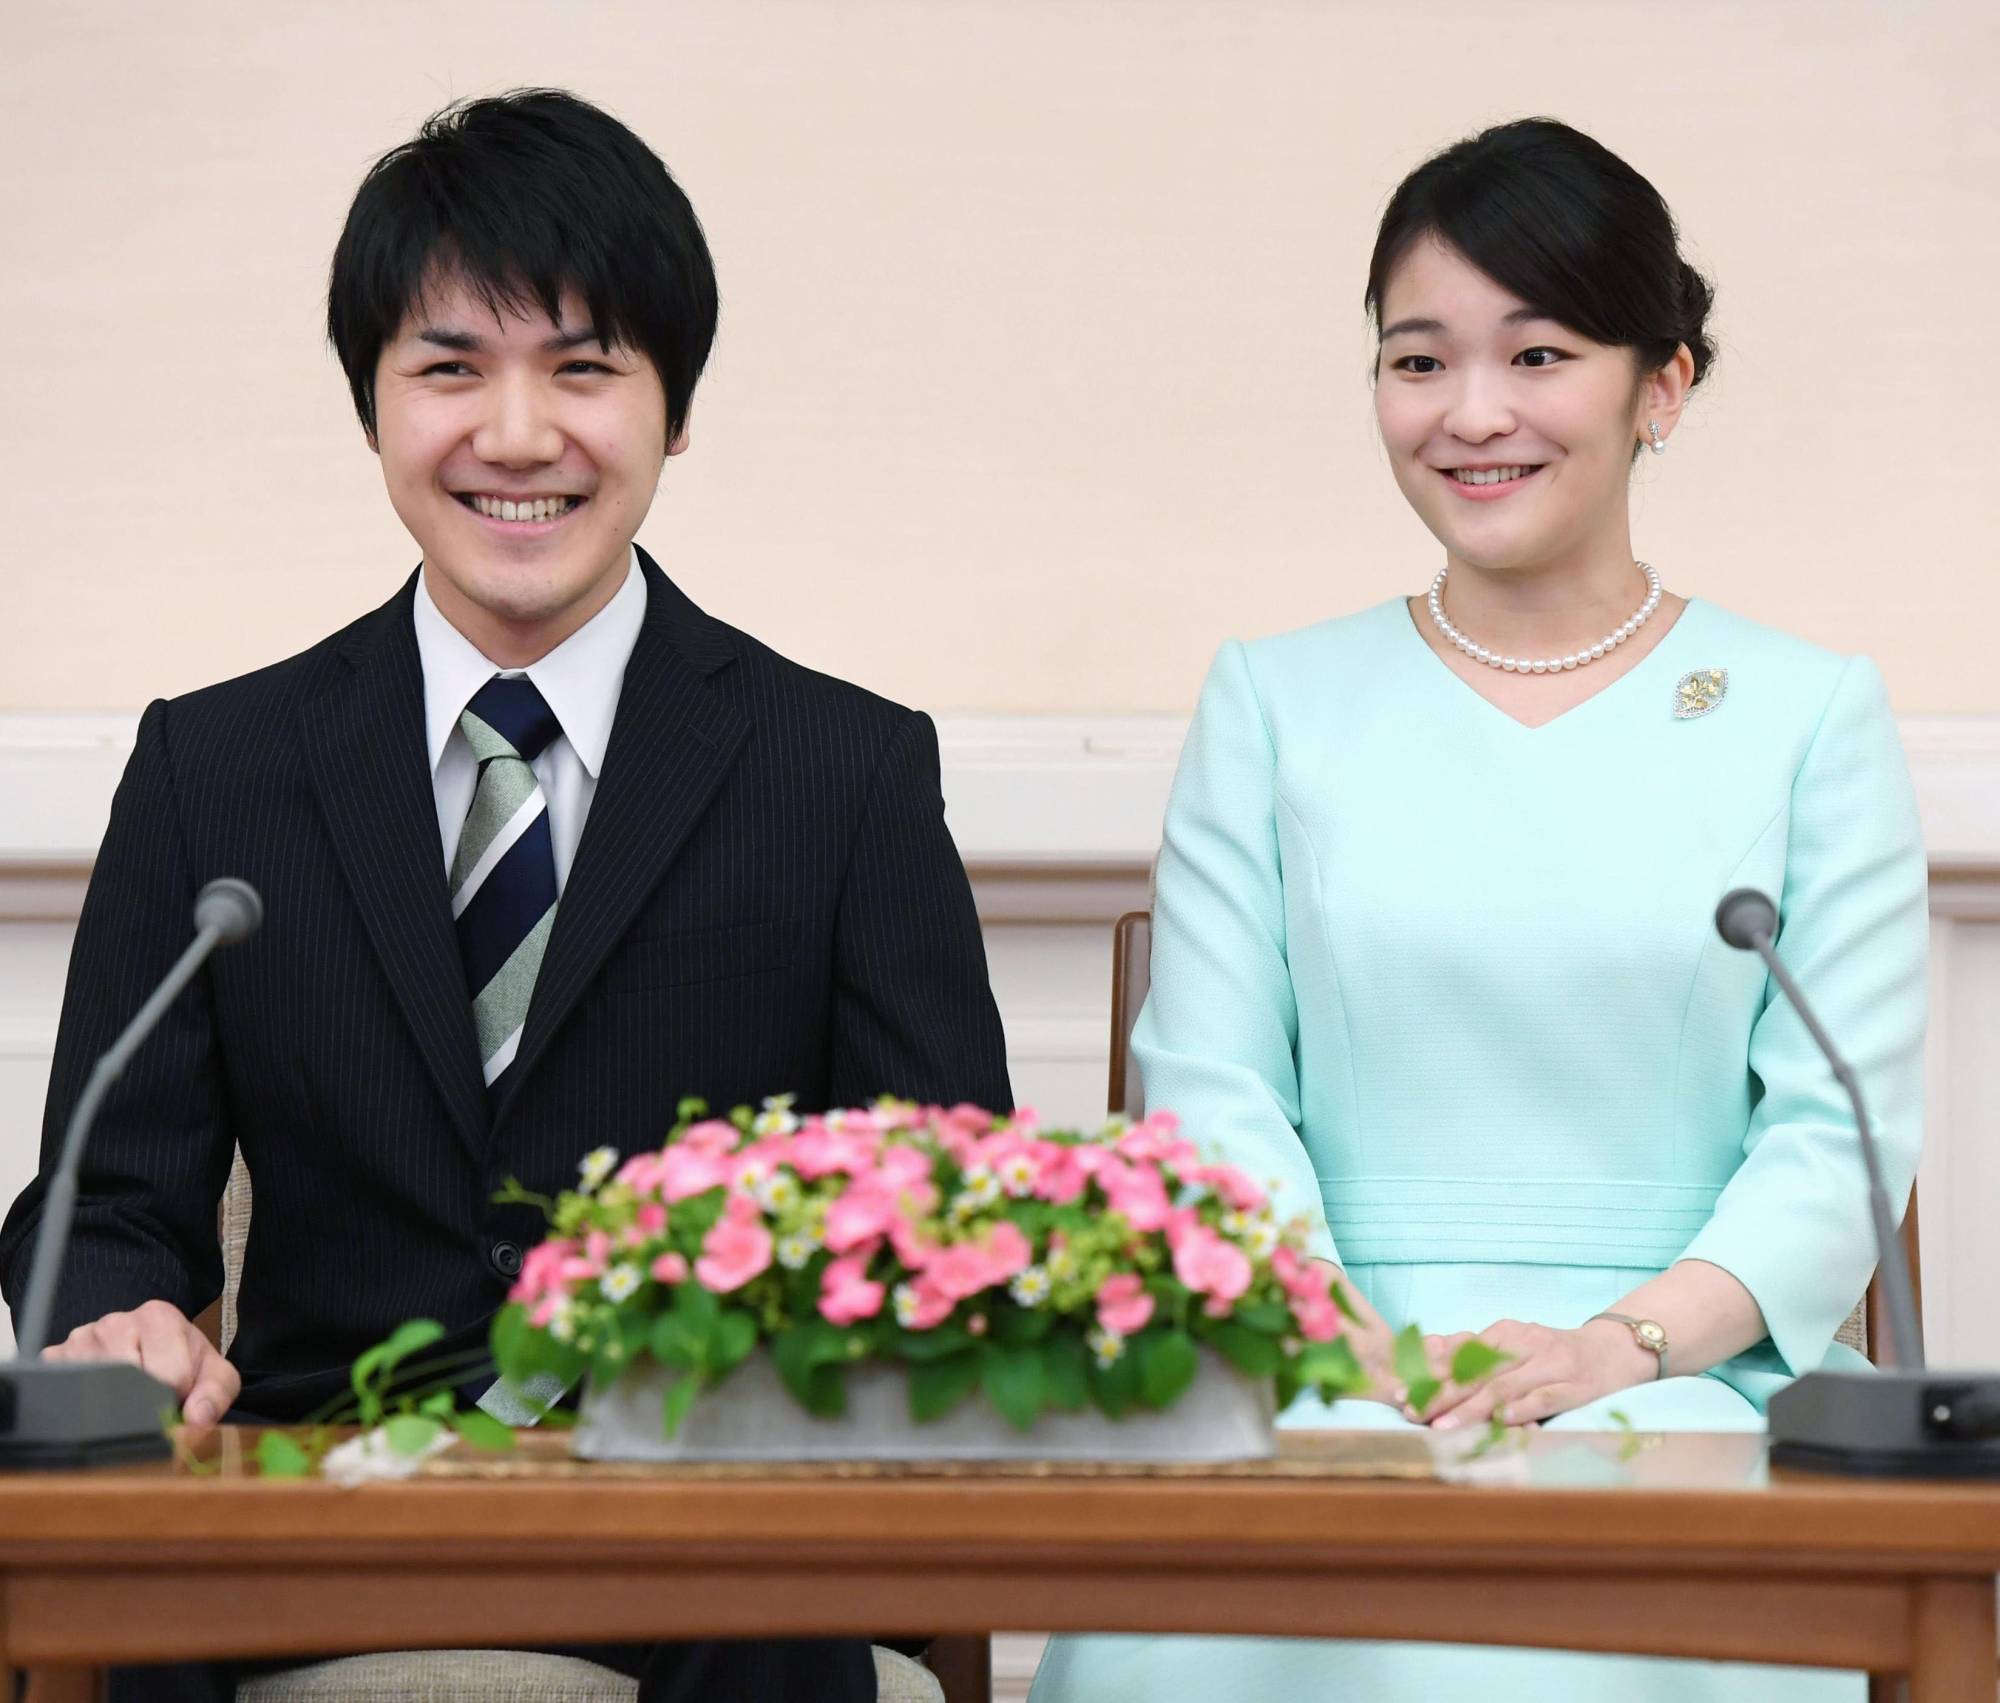 Cuộc hôn nhân giữa công chúa và Komuro, người học cùng trường đại học ở Tokyo, đã bị trì hoãn gần ba năm trong bối cảnh các báo cáo chi tiết về tranh chấp tài chính giữa mẹ của Komuro và vị hôn phu cũ của bà đã làm công chúng Nhật bất bình. Công chúa Mako và Komuro đã đính hôn không chính thức vào tháng 9 /2017 và đám cưới của họ ban đầu dự kiến ​​diễn ra vào ngày 4/11/2018. Nhưng vào tháng 2 cùng năm, hoàng gia đã thông báo hoãn lễ cưới. Để kết hôn với Komuro, công chúa Mako không chỉ từ bỏ hết danh hiệu mà còn từ chối số tiền 1,3 triệu USD là tiền hồi môn của hoàng gia.